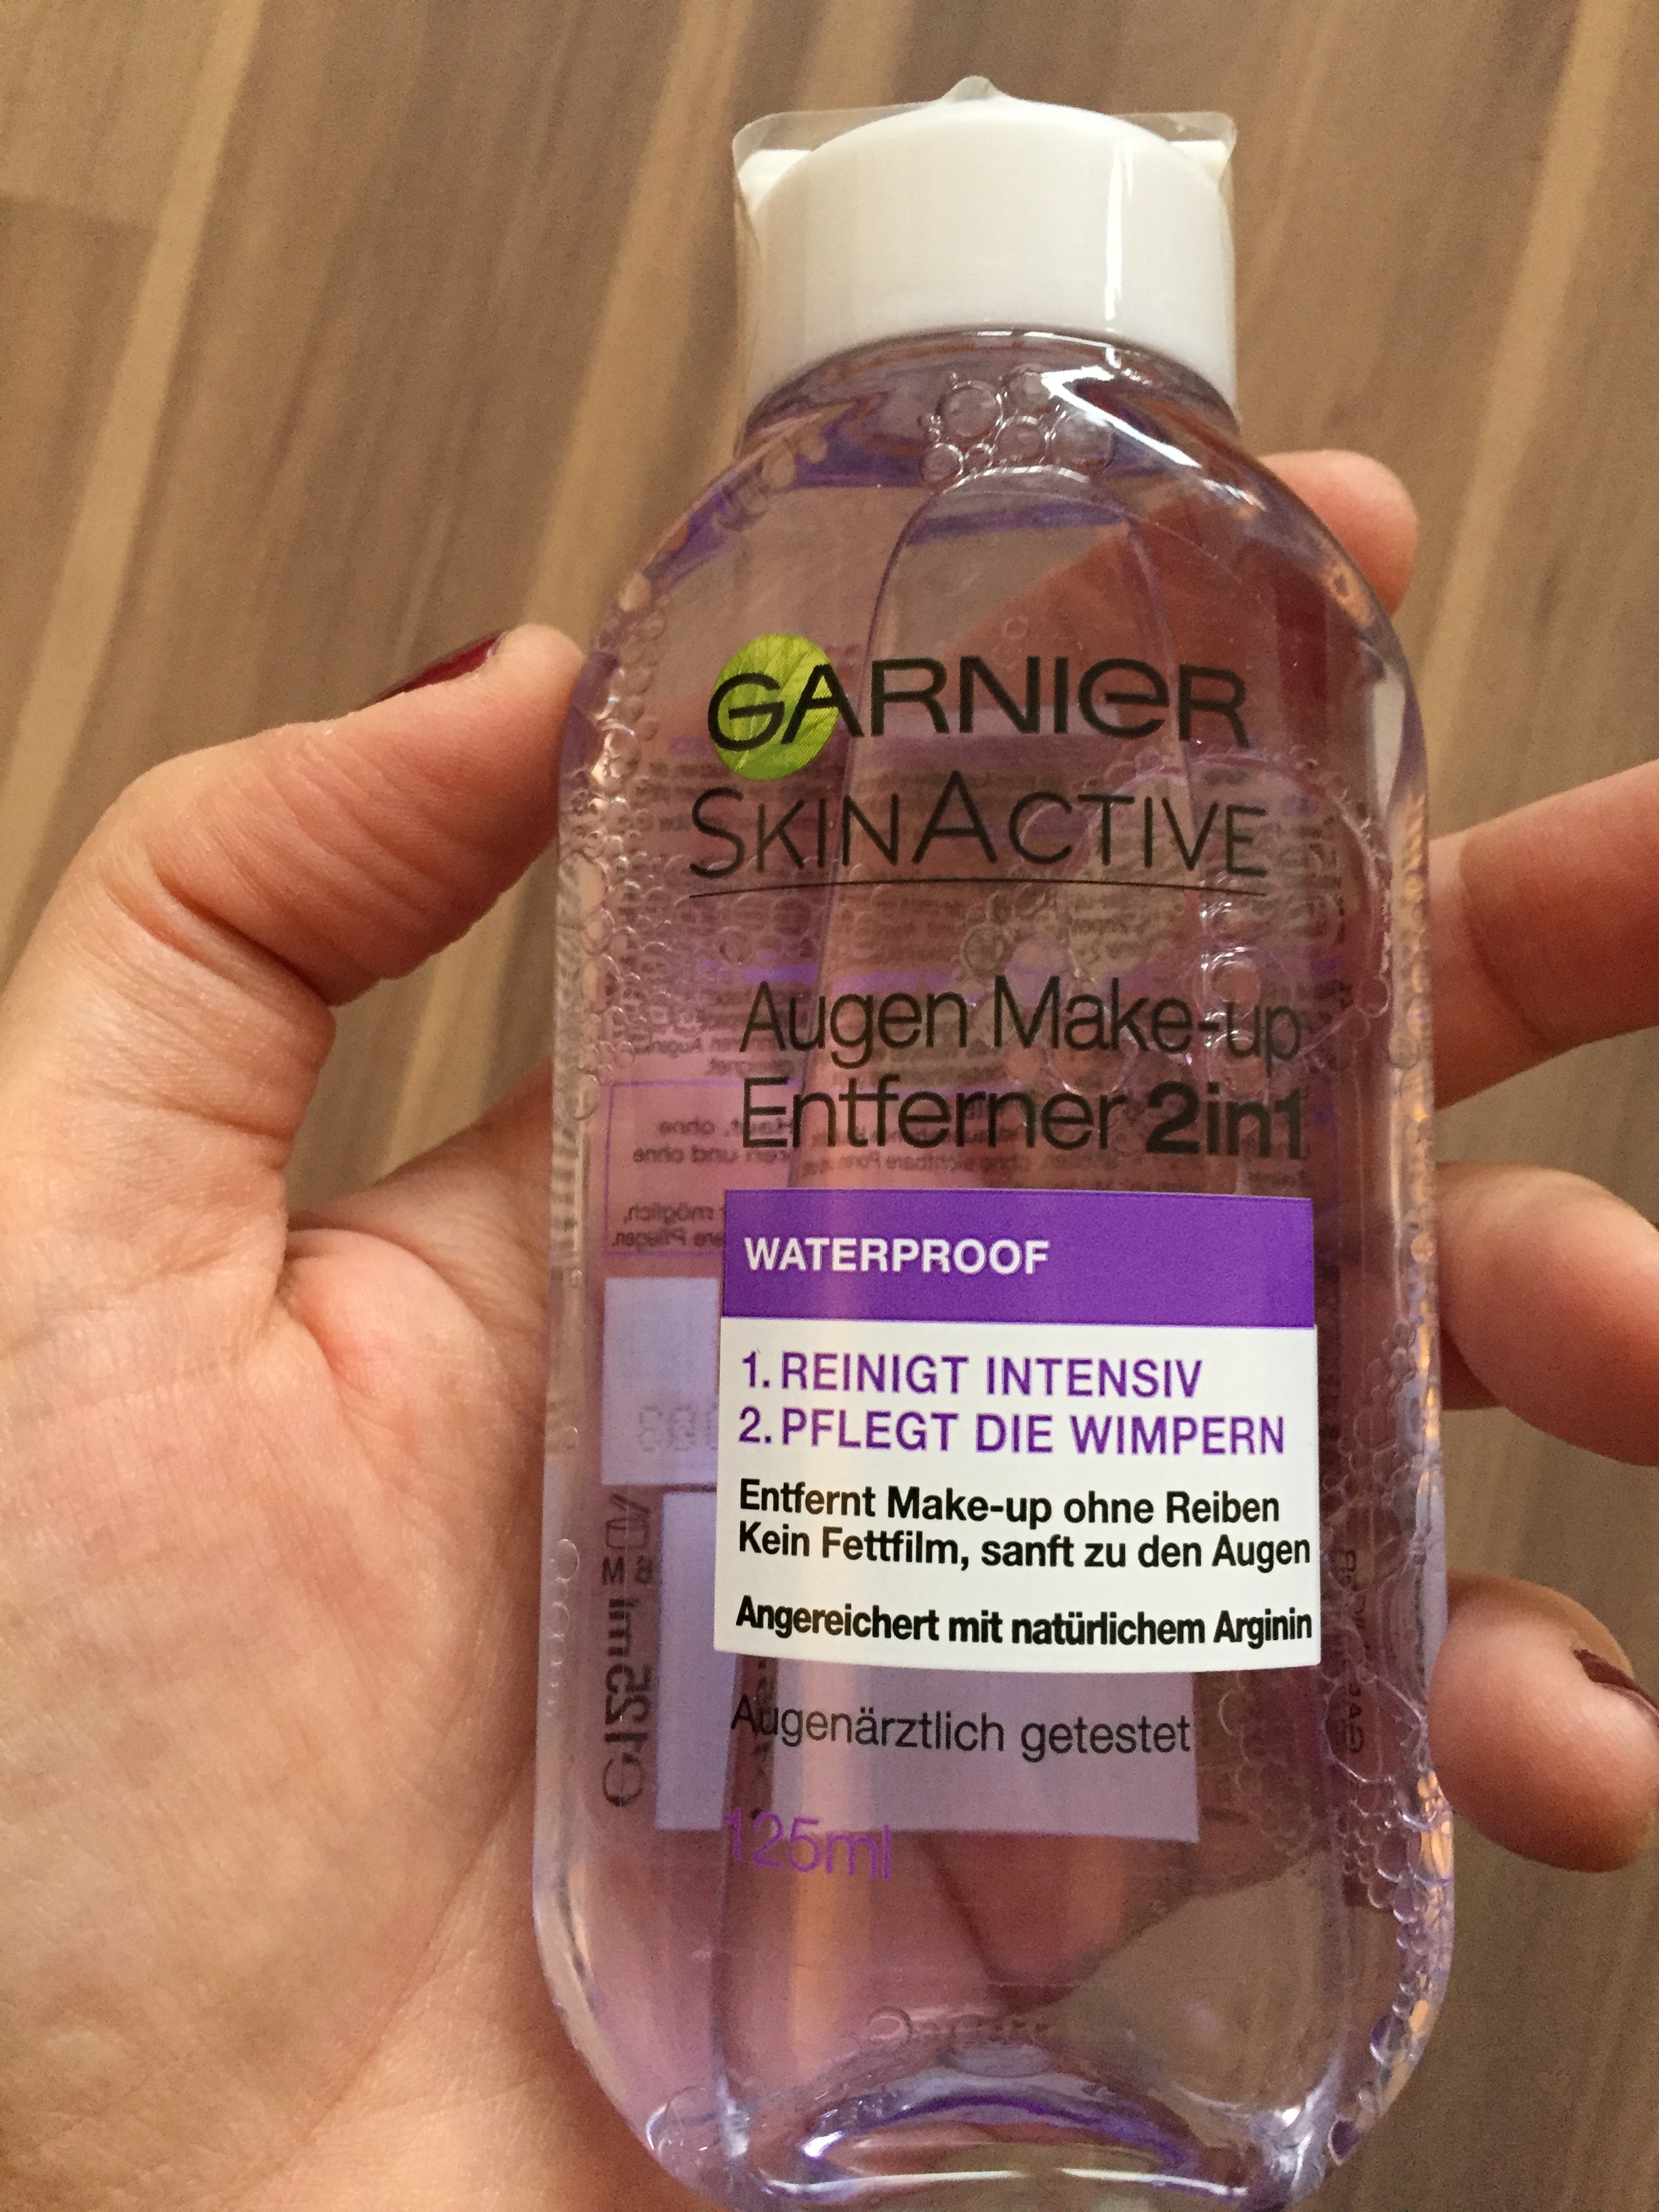 Produkttest: Active Make-up missappledome – Garnier Entferner2in1 Augen Skin